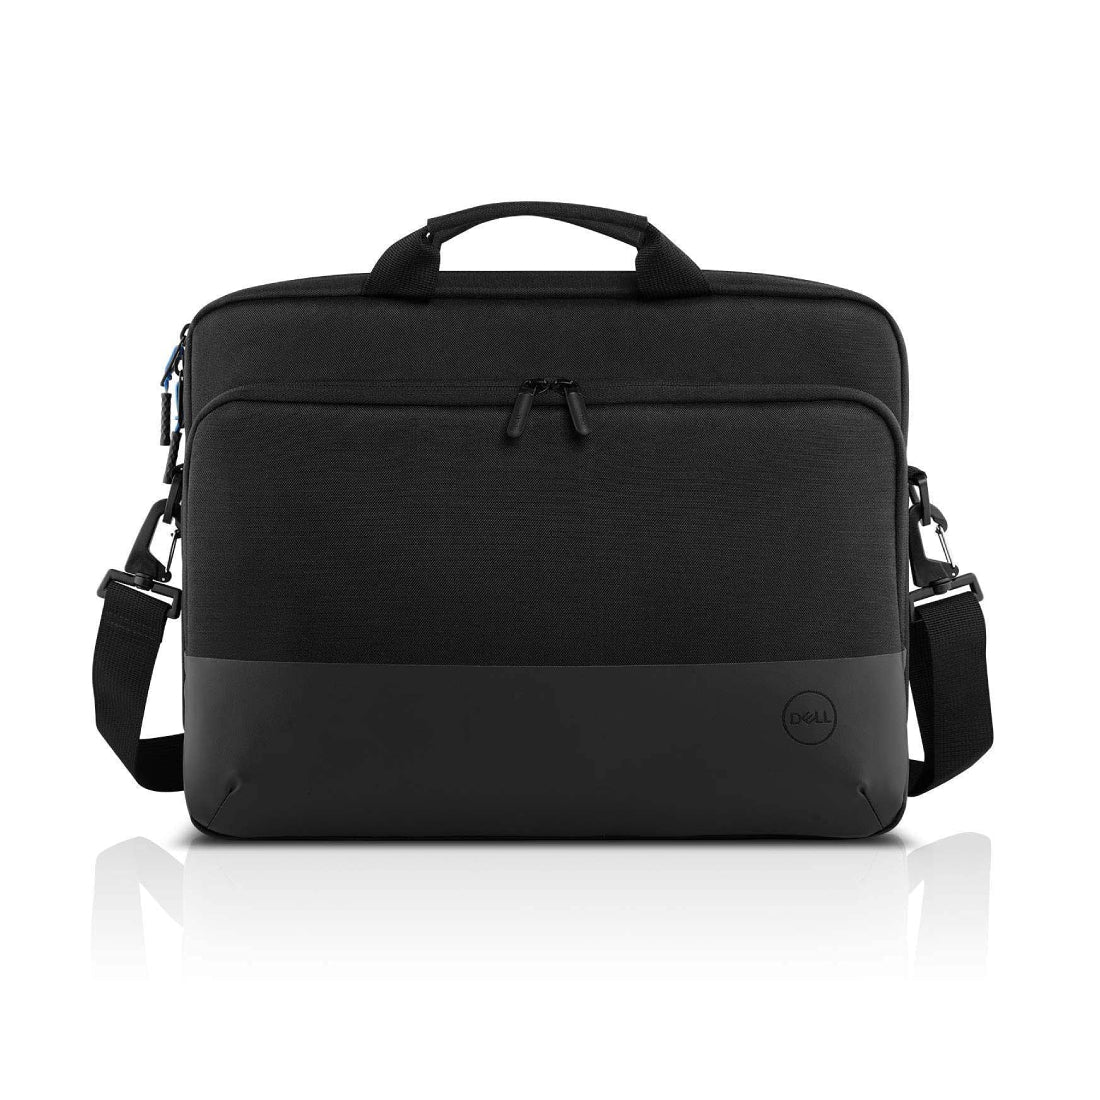 Dell PO1520CS Pro Slim Briefcase - Black - حقيبة حاسوب محمول - Store 974 | ستور ٩٧٤